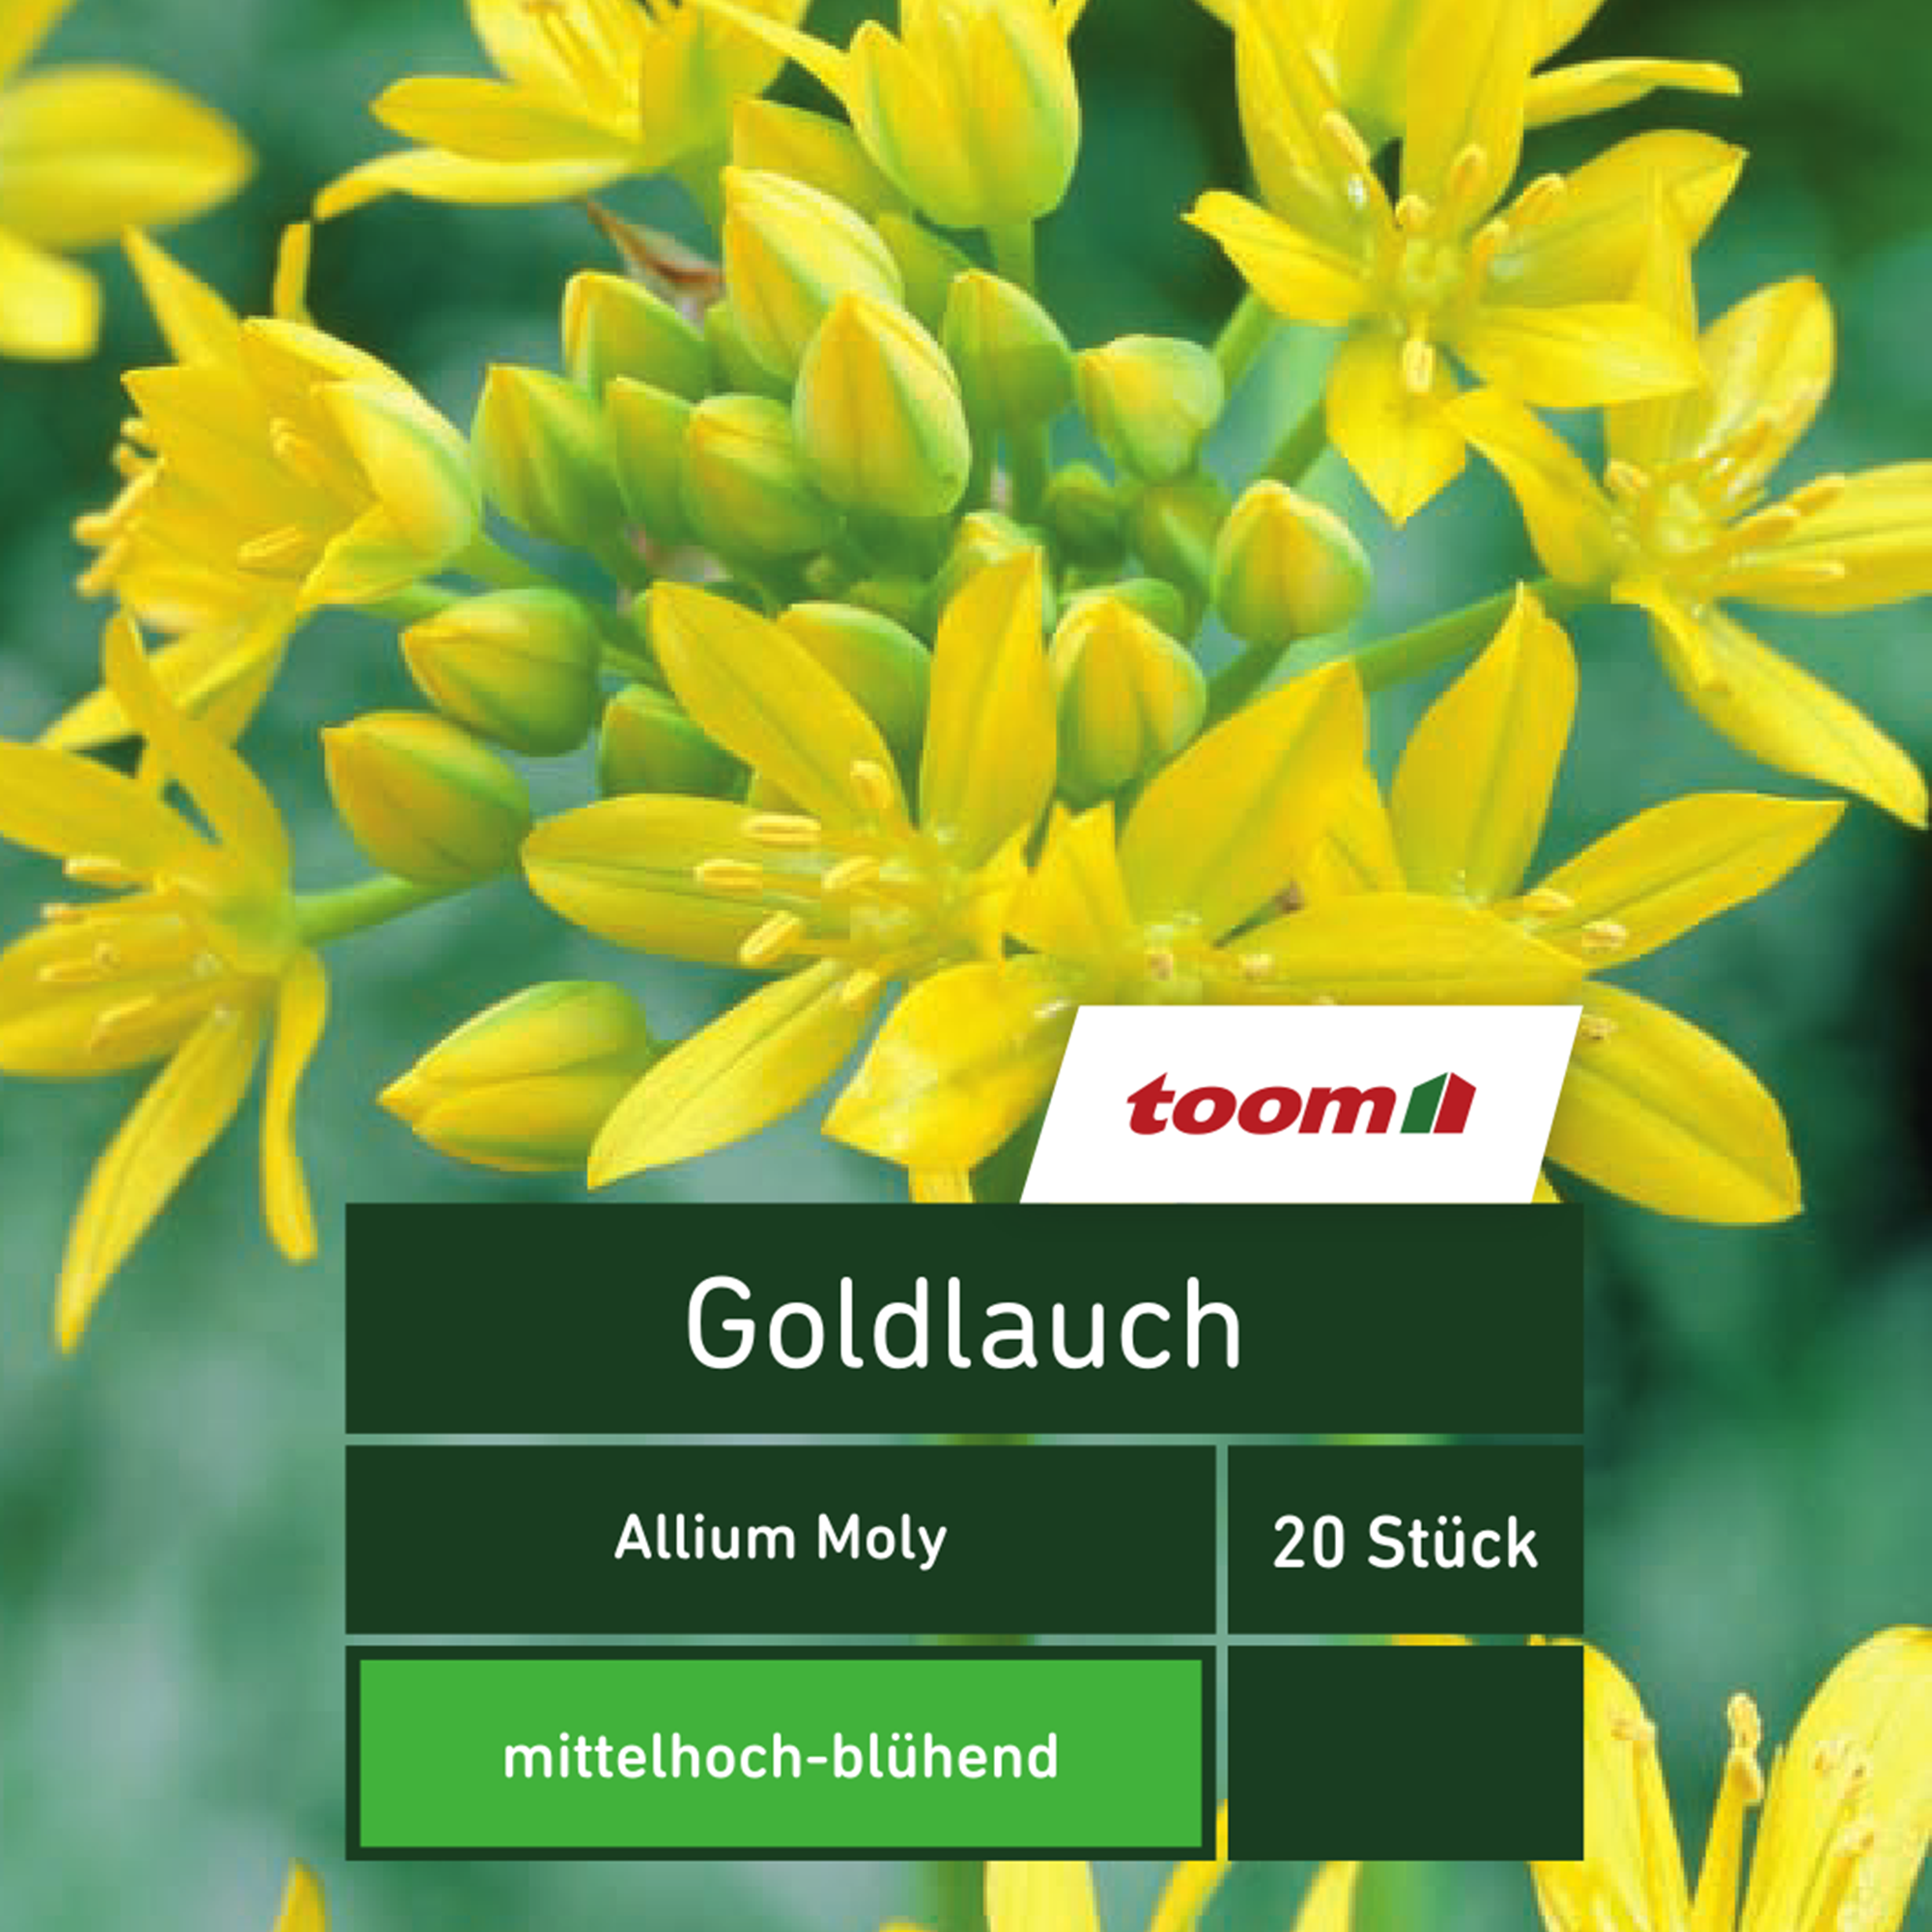 Goldlauch 'Allium Moly', 20 Stück, gelb + product picture